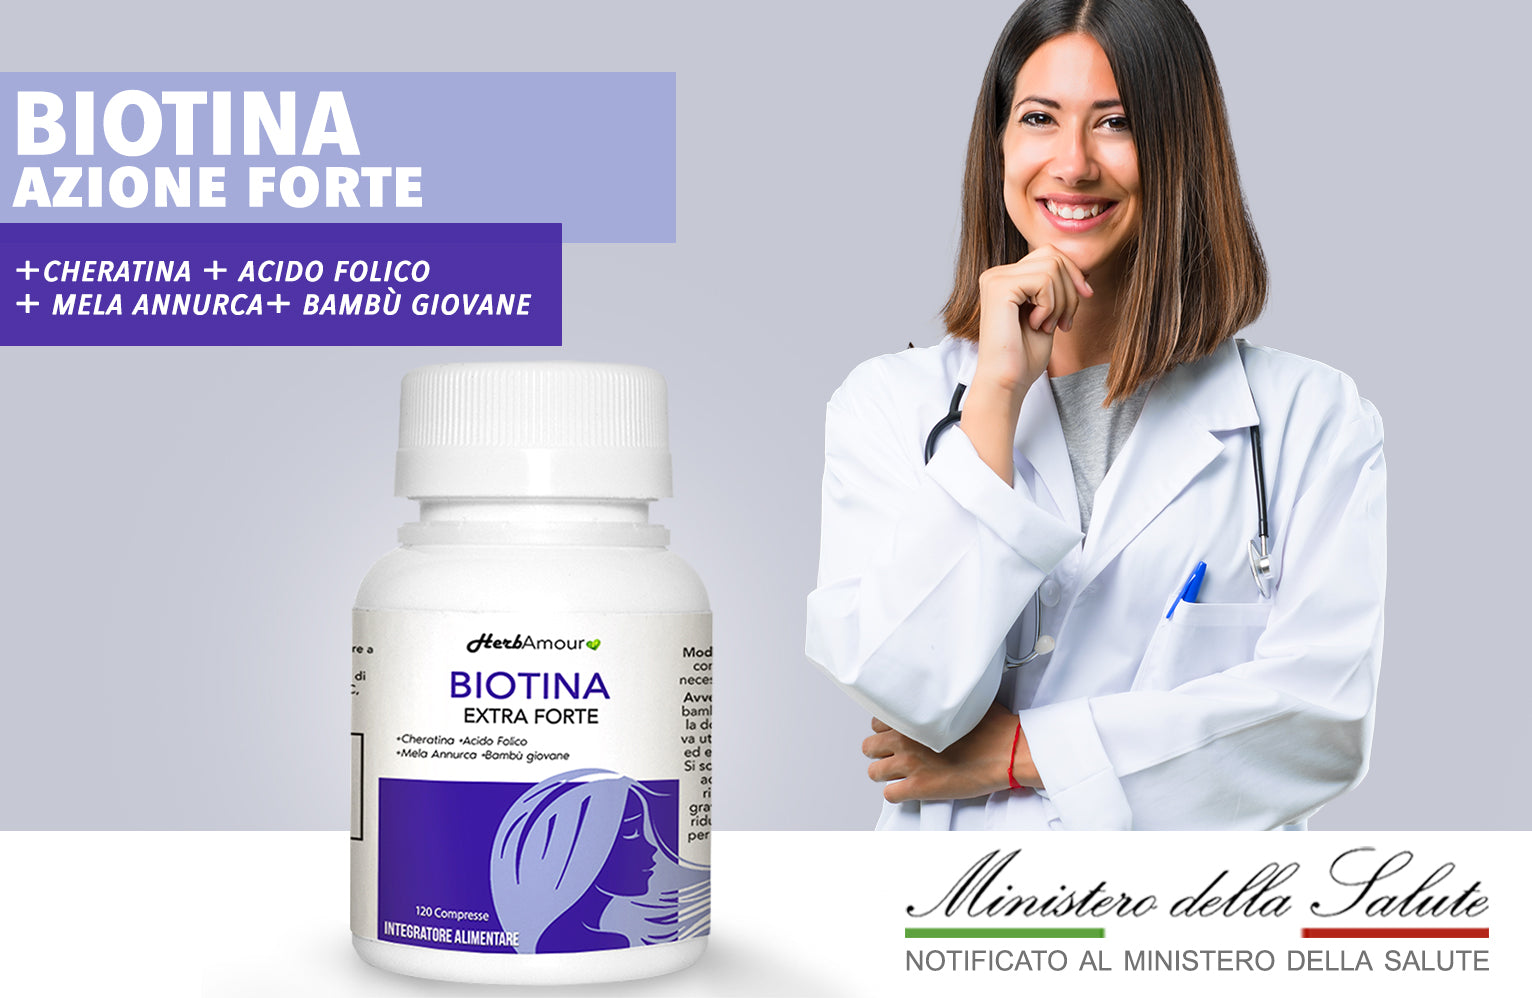 HerbAmour® Biotina